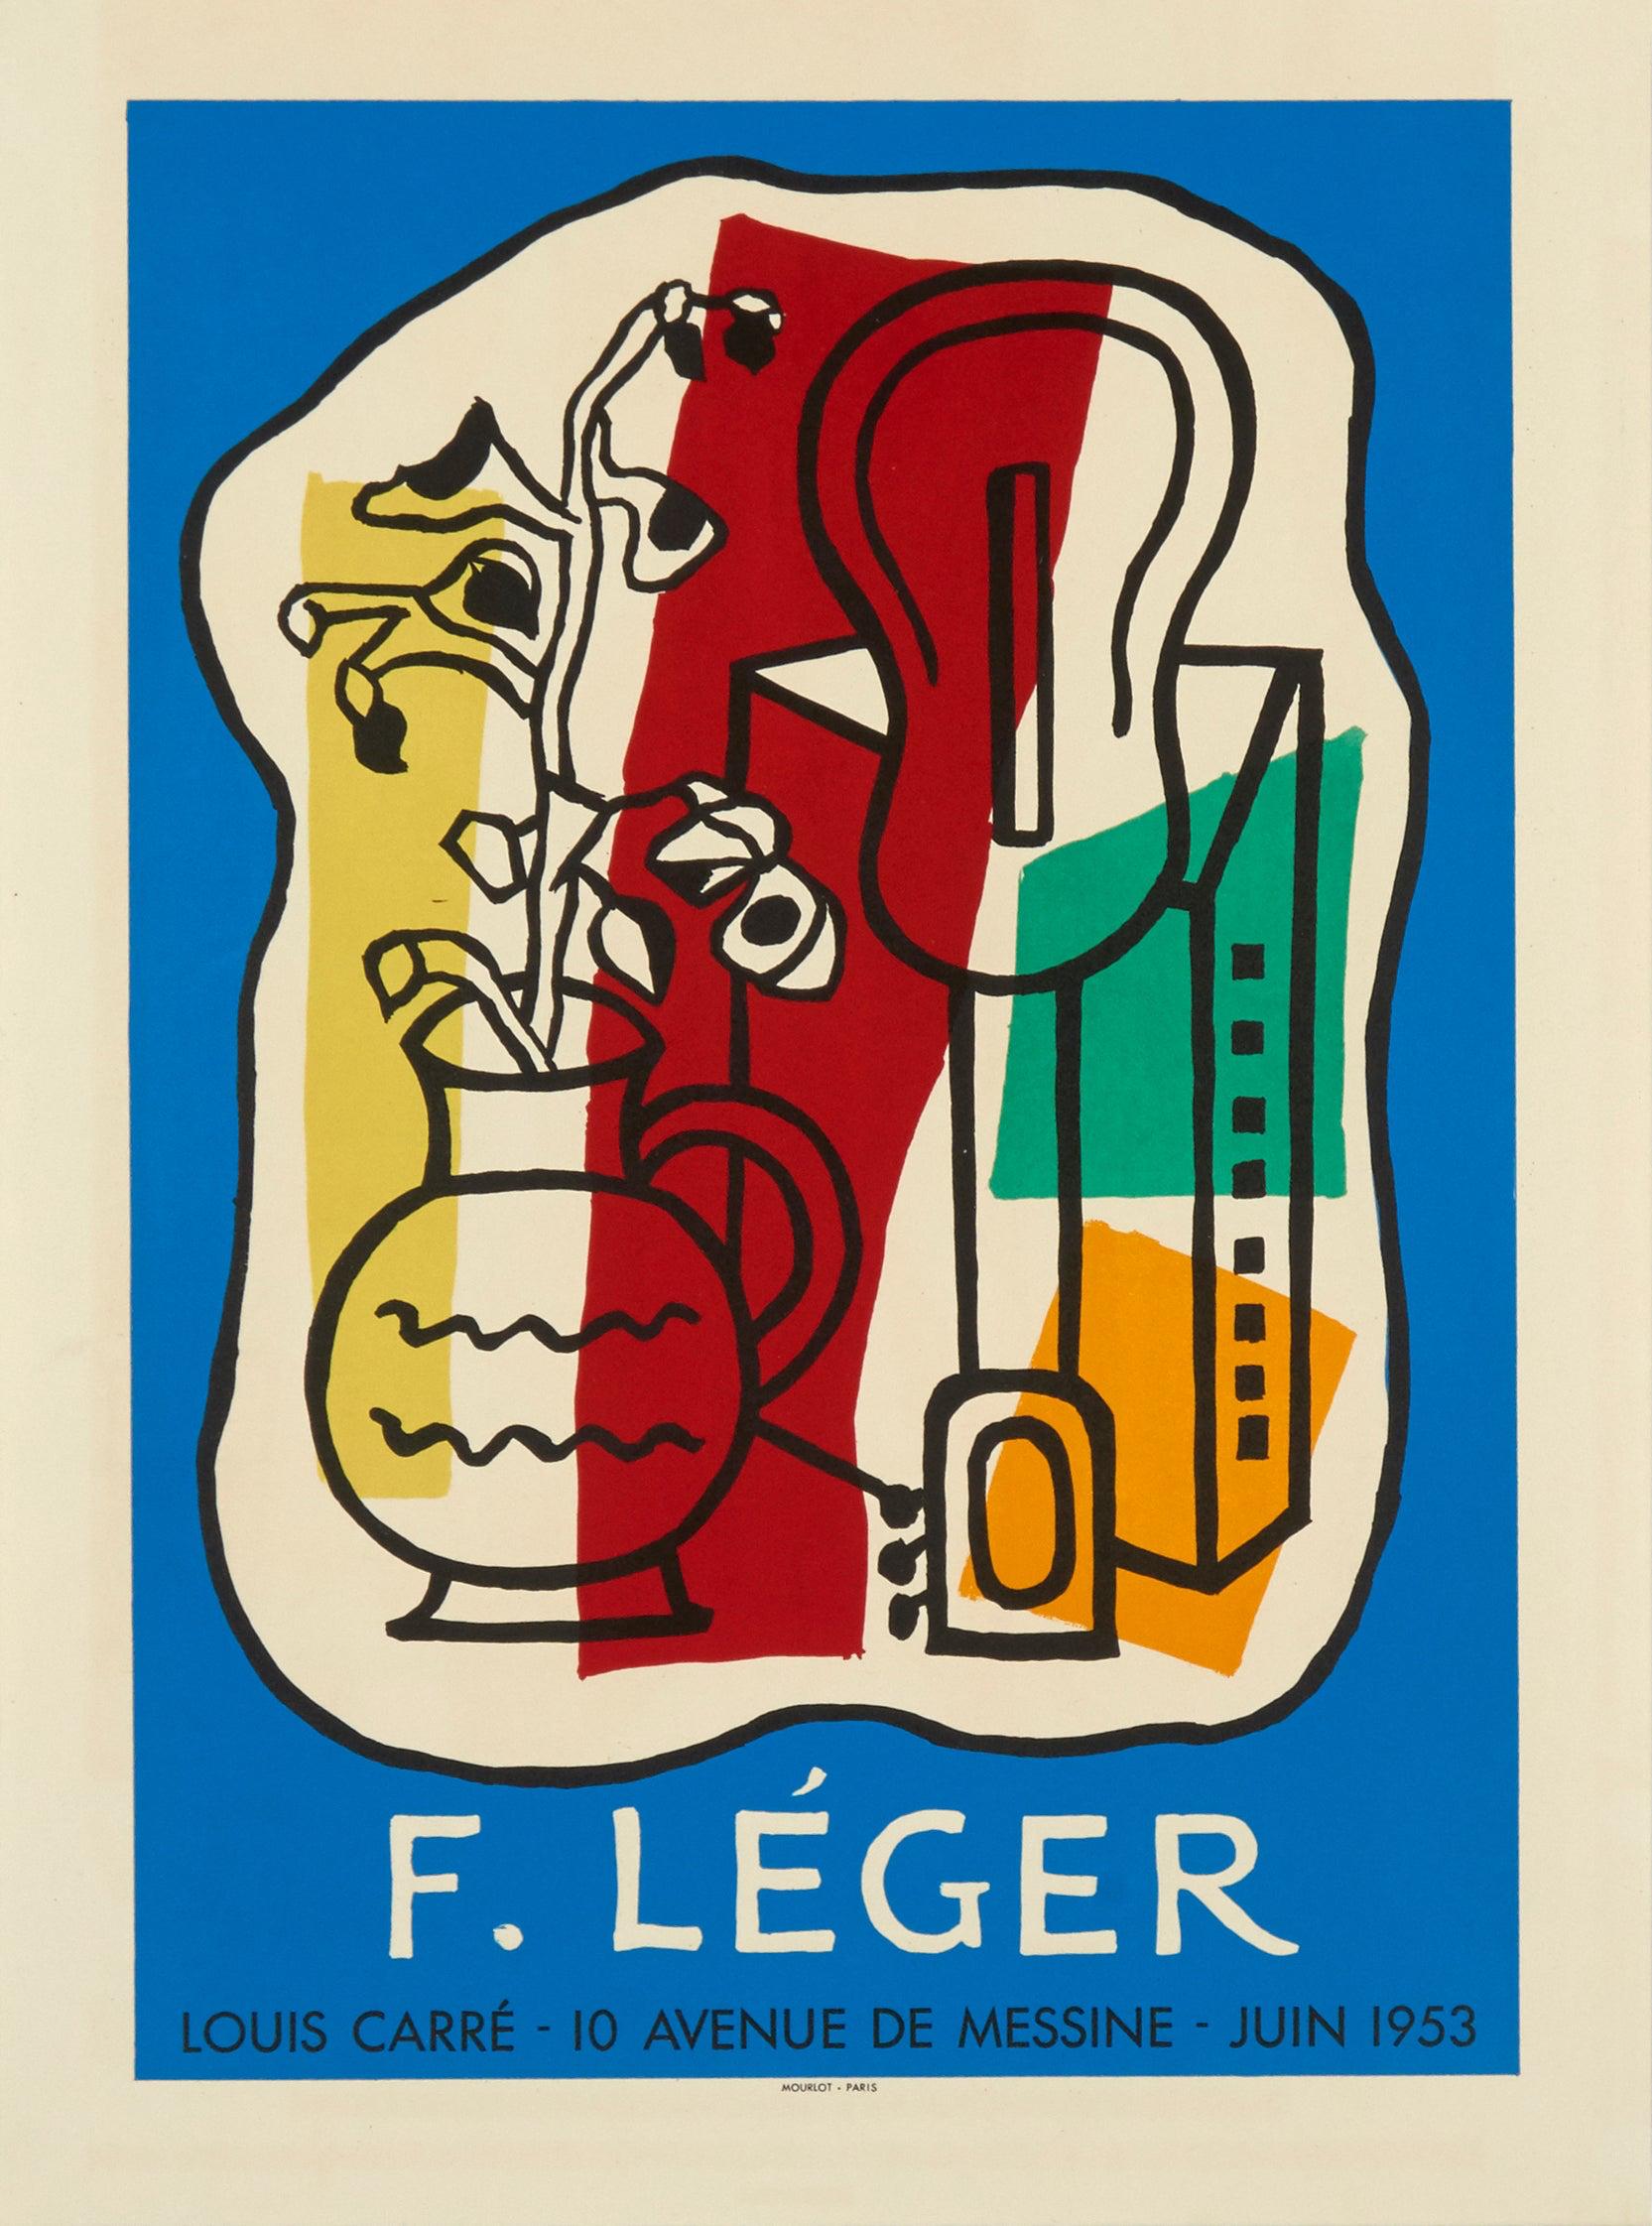 Galerie Louis Carre (d'après) Fernand Léger, 1953 - Print de (after) Fernand Léger